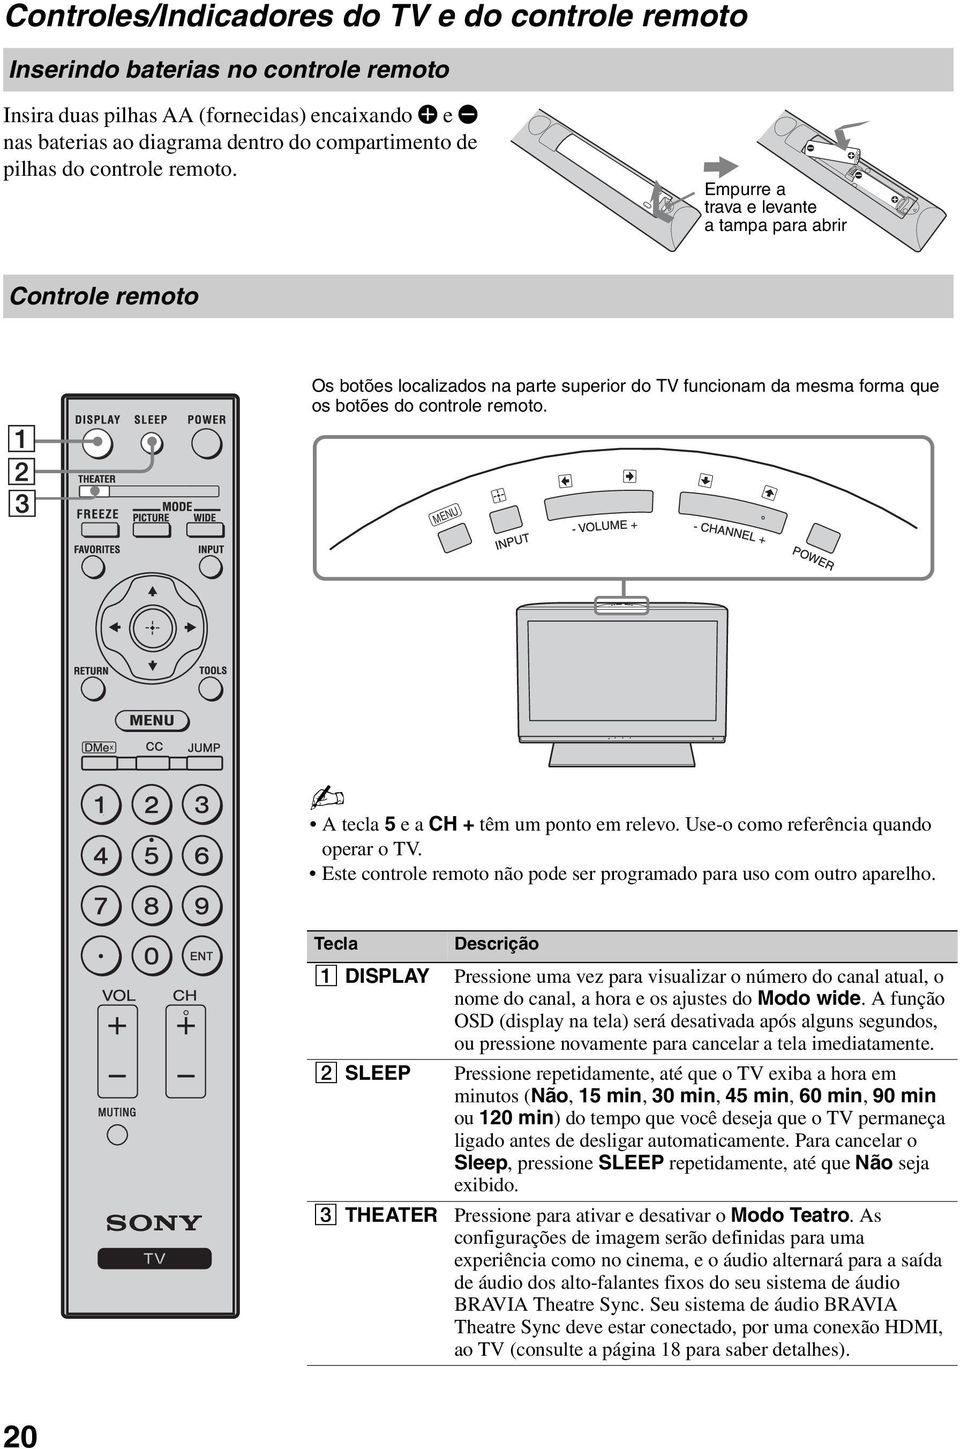 MENU A tecla 5 e a CH + têm um ponto em relevo. Ue-o como referência quando operar o TV. Ete controle remoto não pode er programado para uo com outro aparelho.